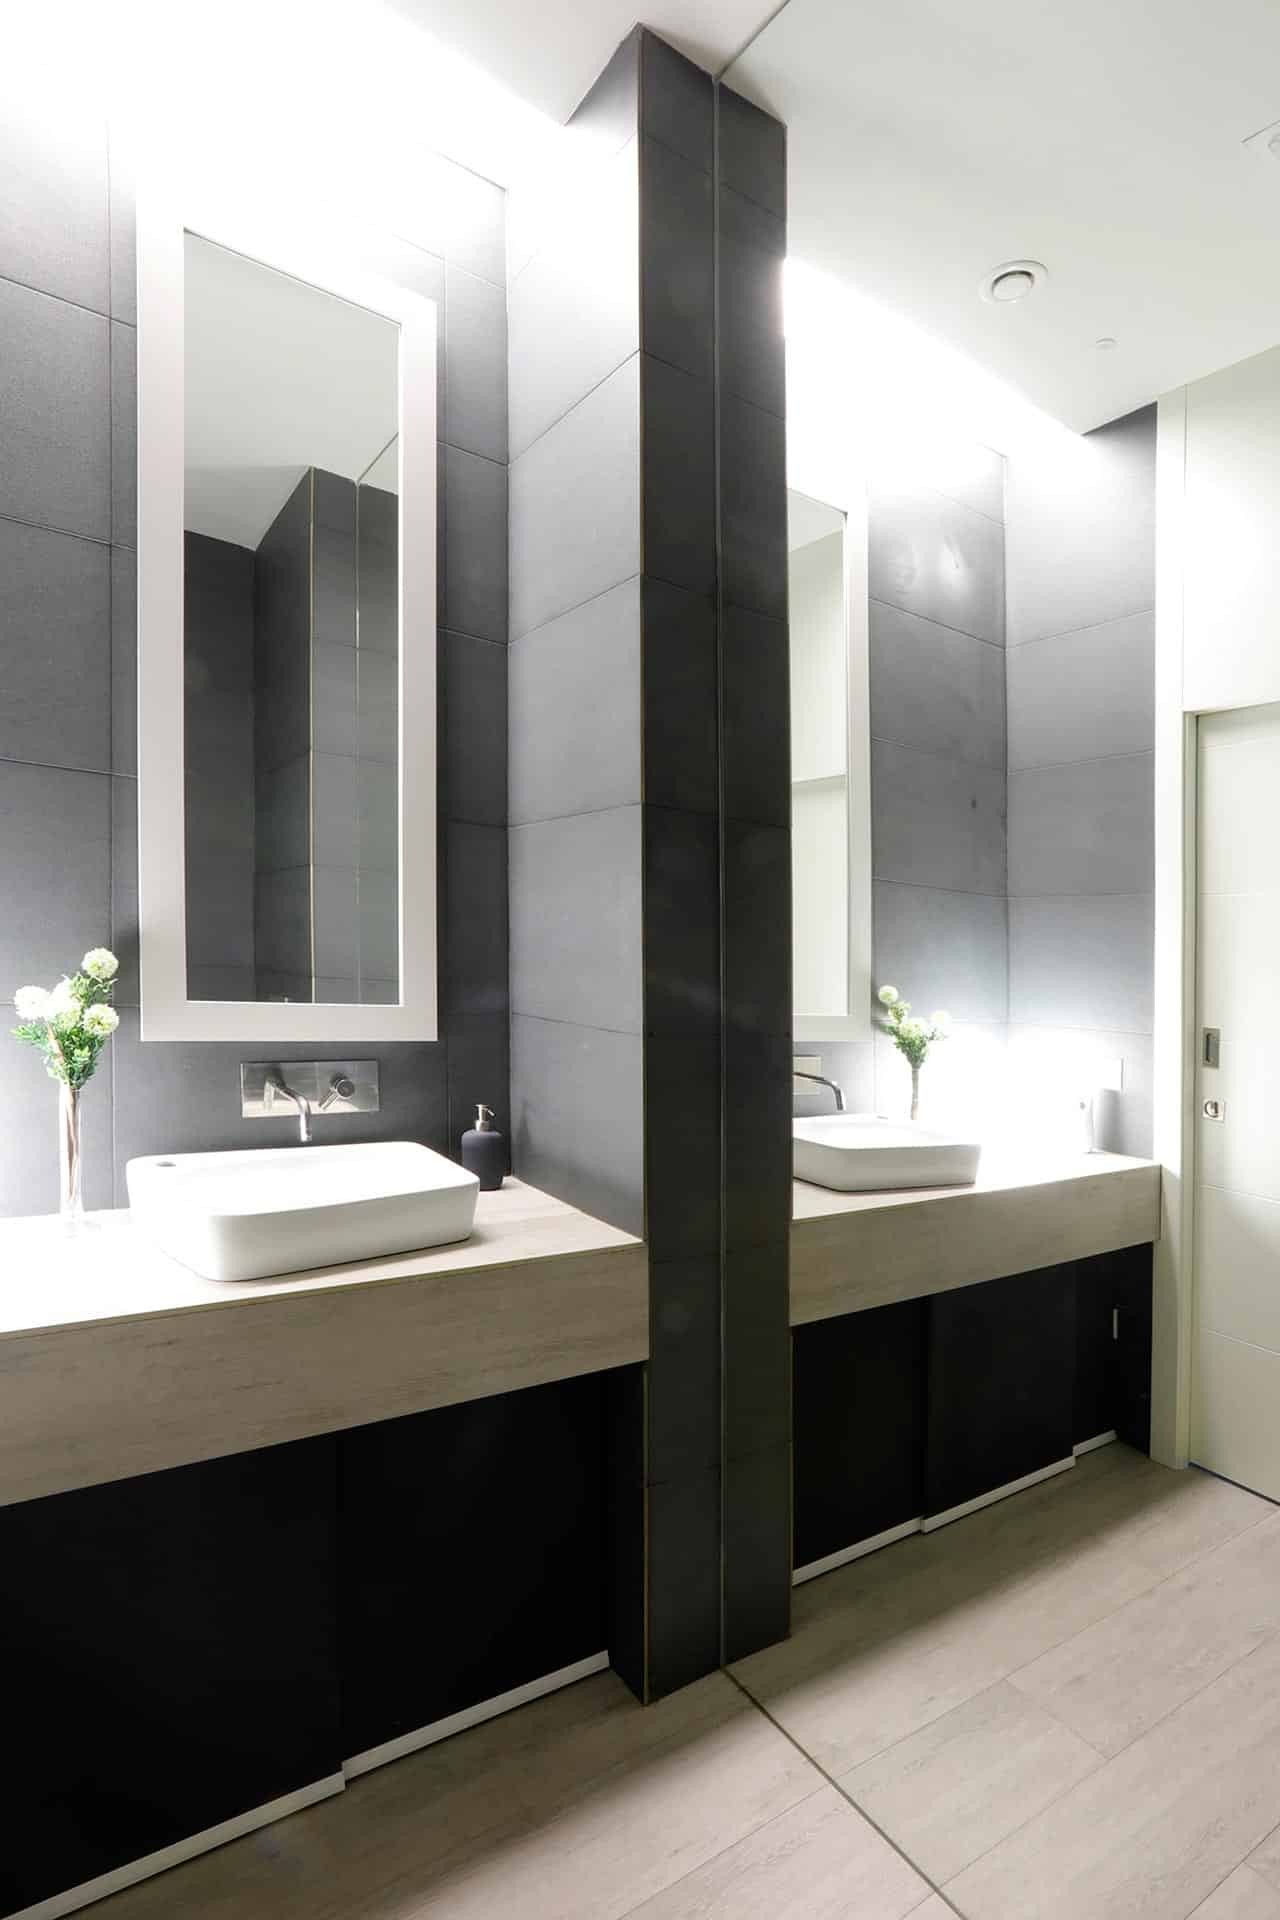 Baño de local de diseño con gres porcelánico negro y gran espejo diseñado por Moah Arquitectos en Santander